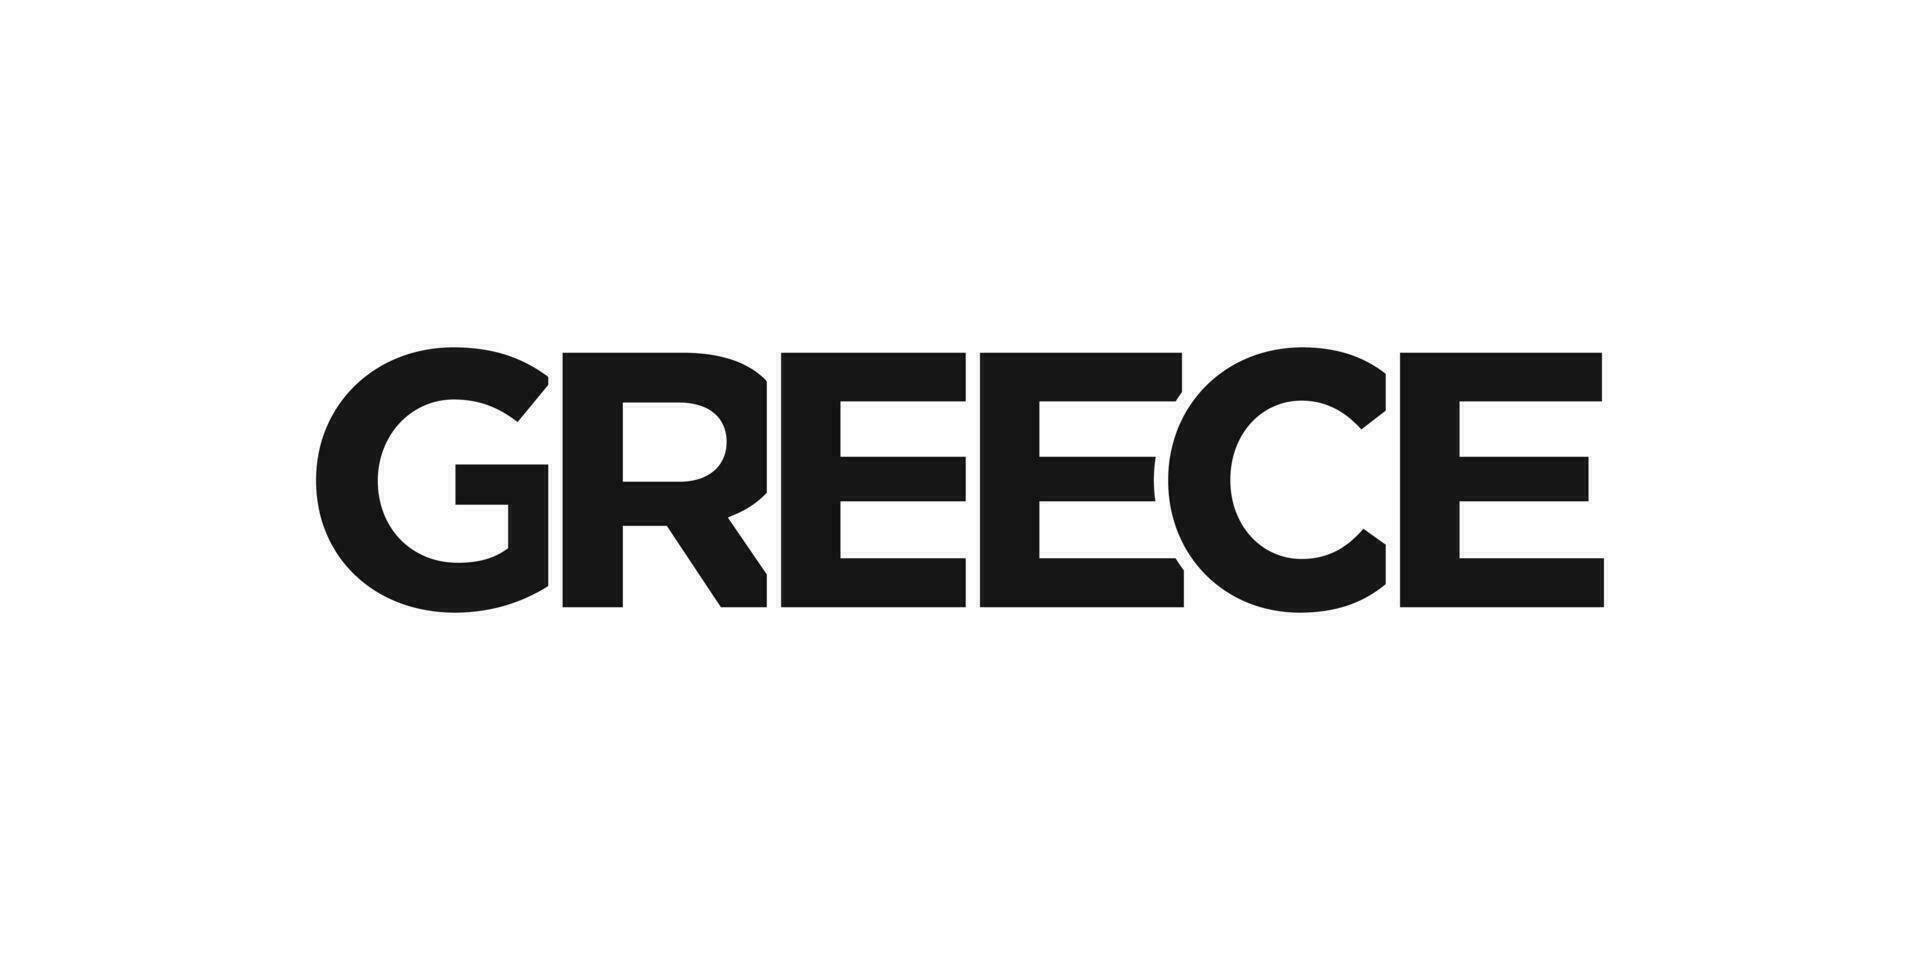 Griekenland embleem. de ontwerp Kenmerken een meetkundig stijl, vector illustratie met stoutmoedig typografie in een modern lettertype. de grafisch leuze belettering.